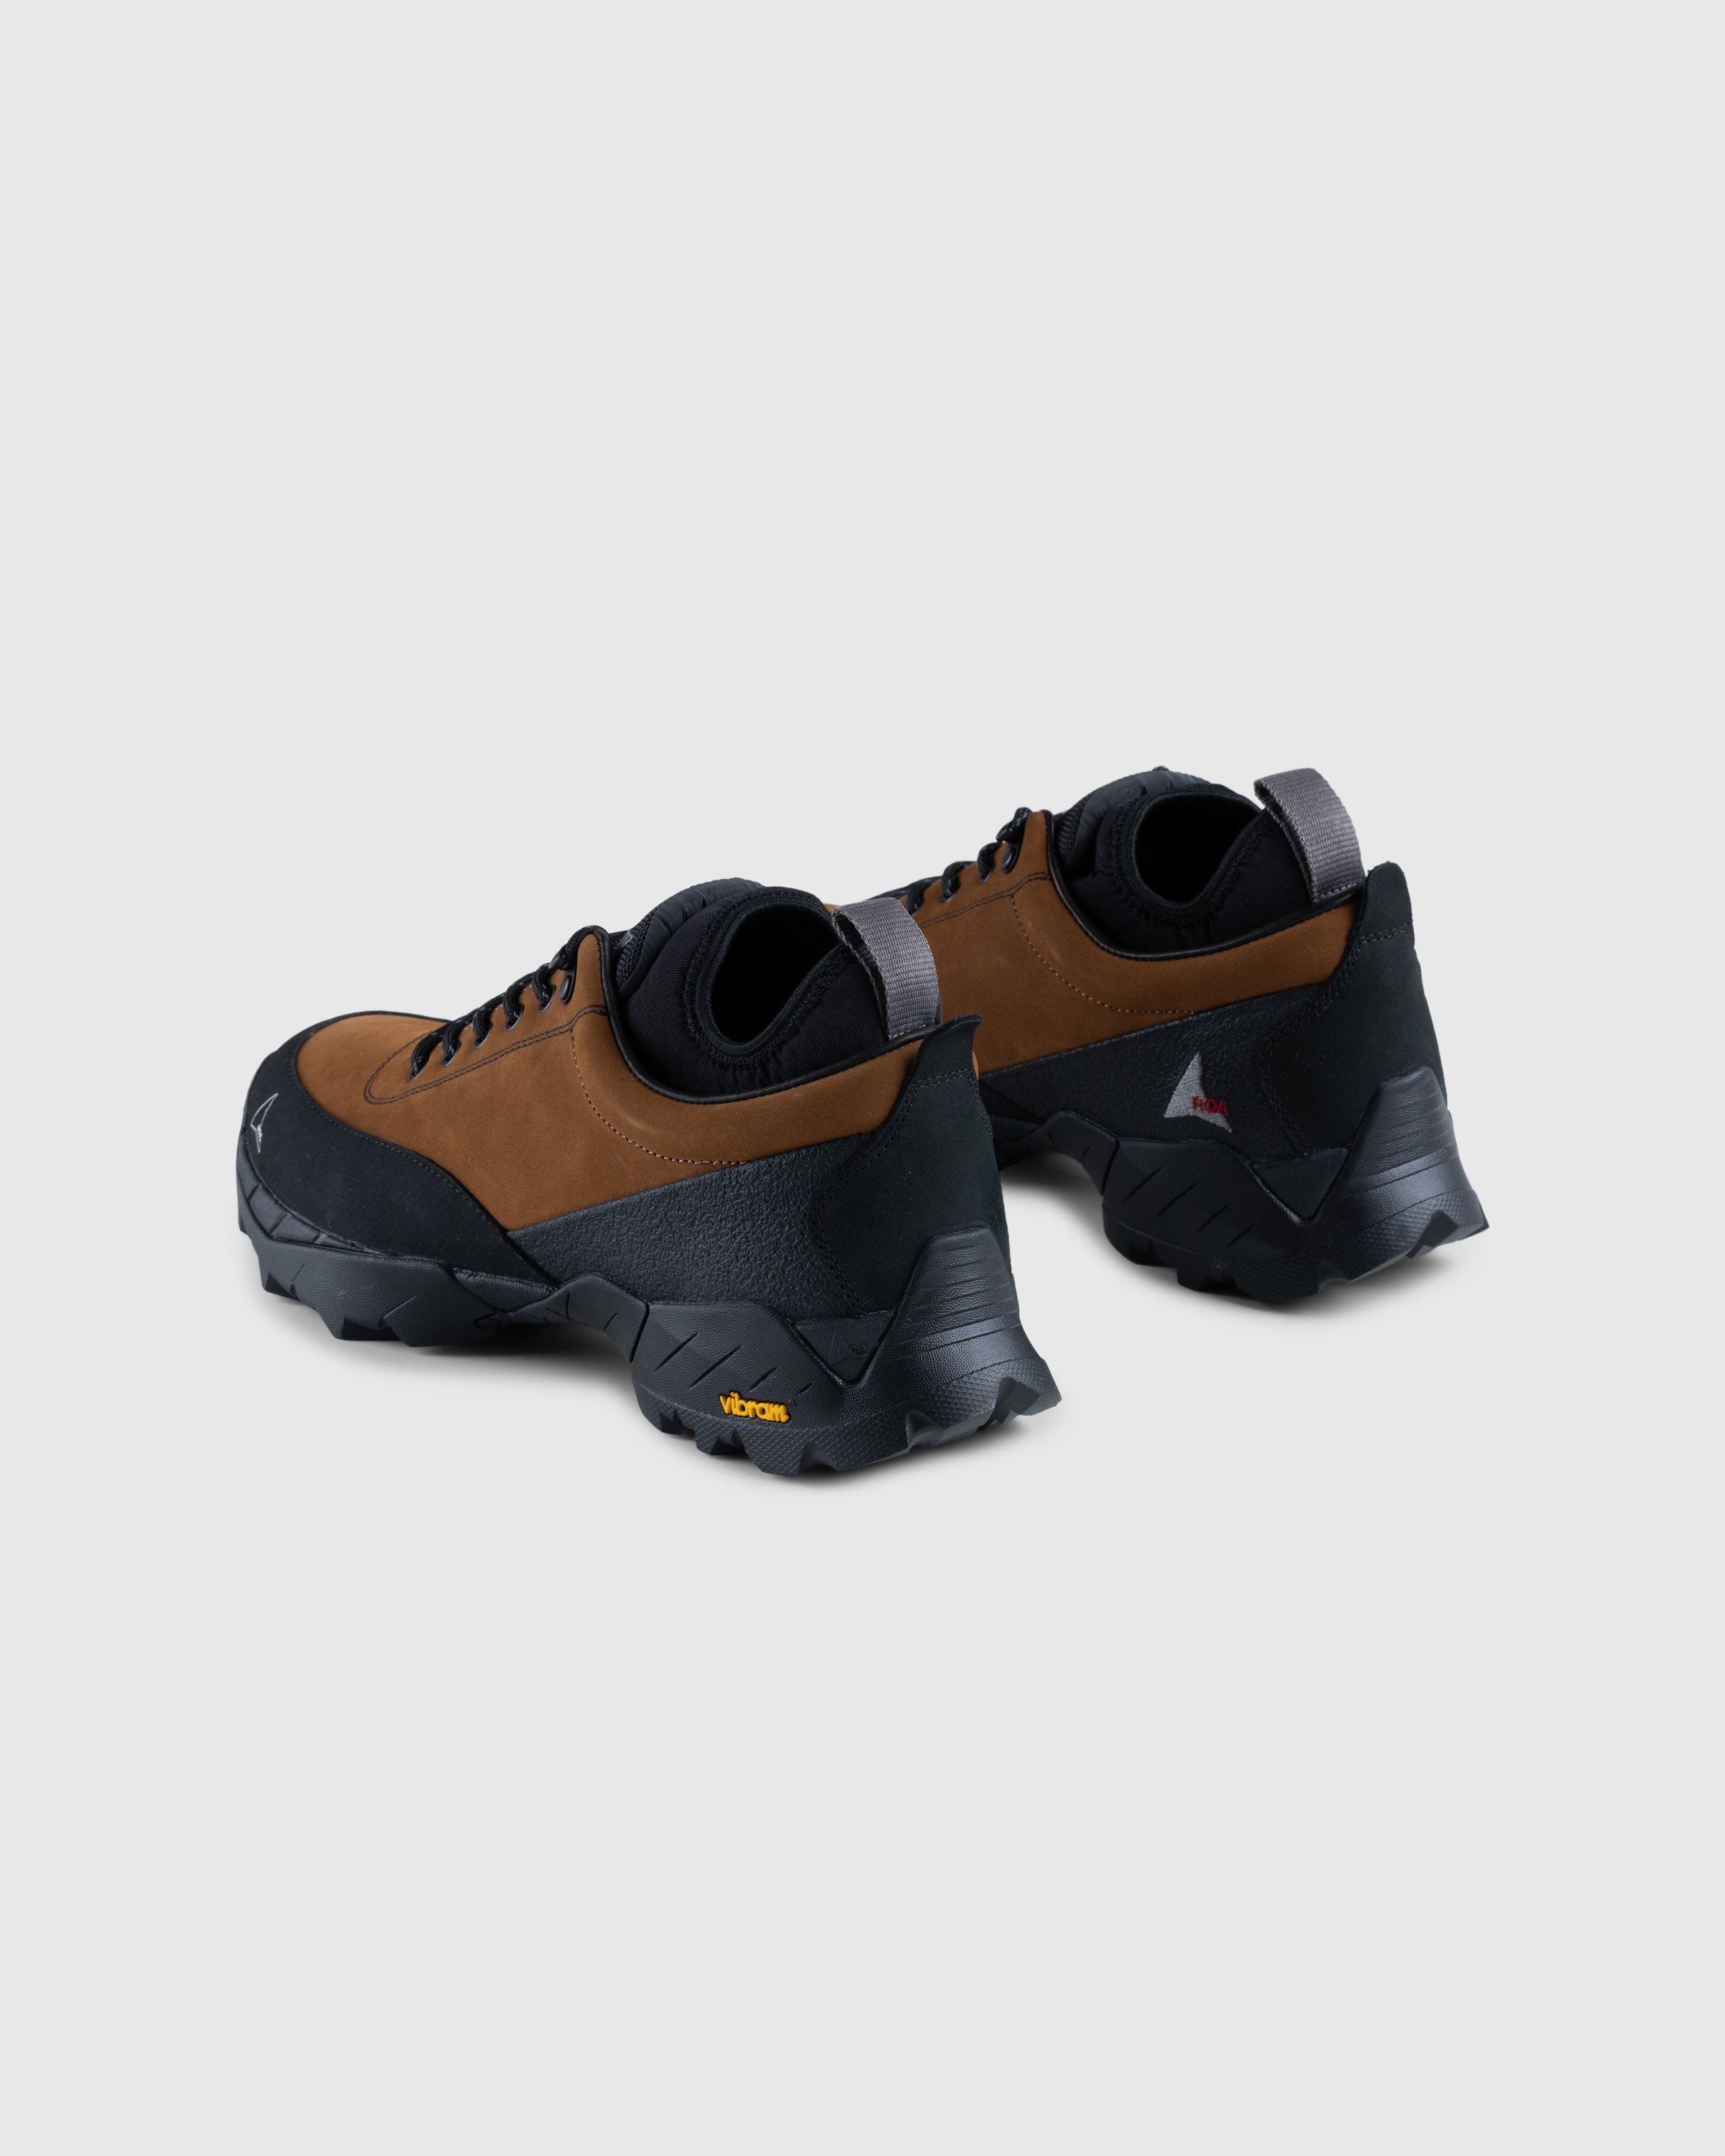 ROA - Neal Sneakers Brown/Black - Footwear - Brown - Image 4